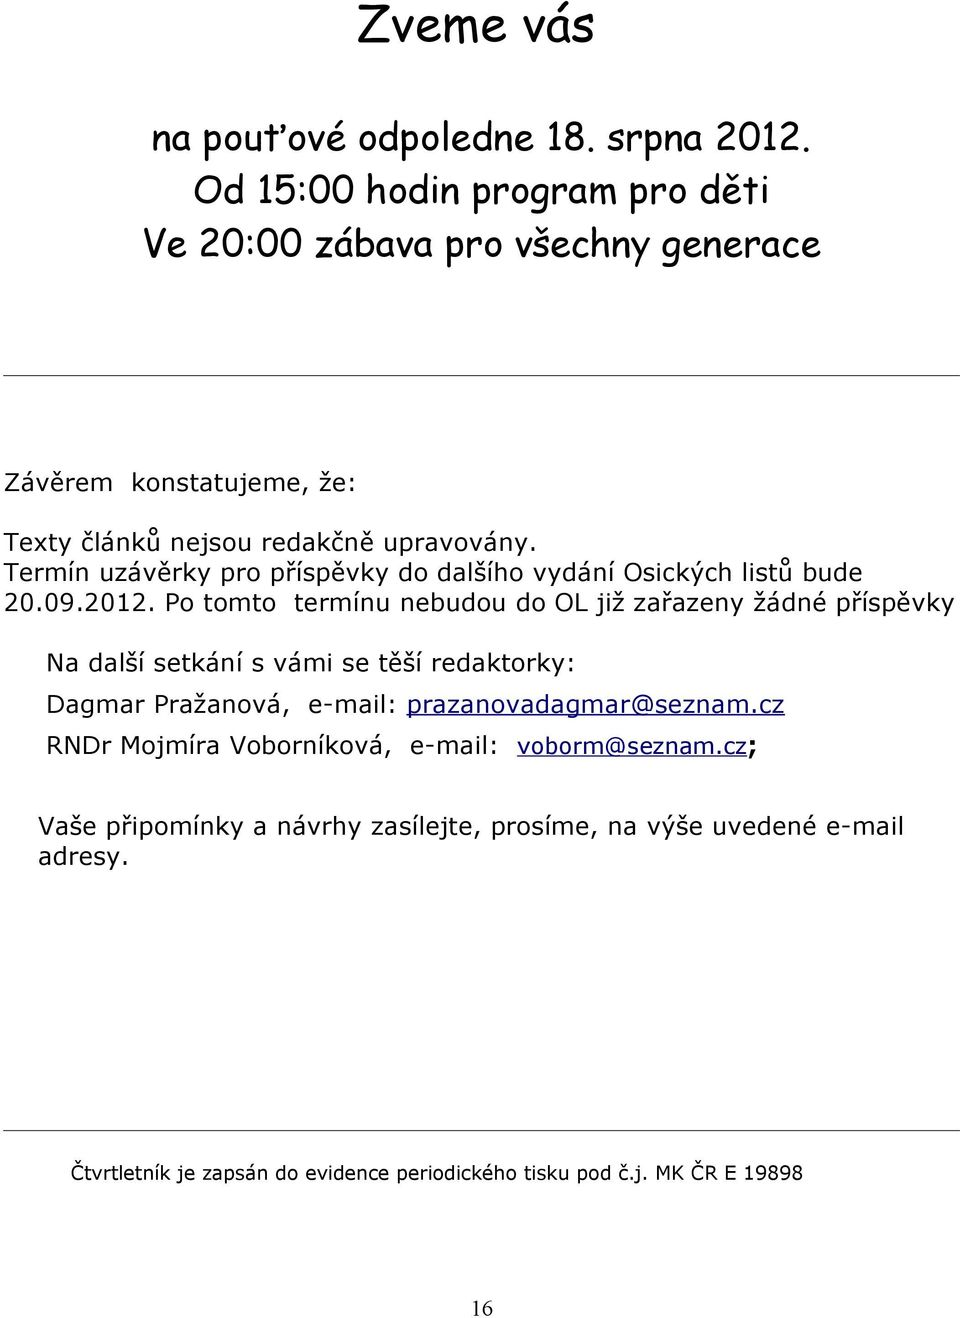 Termín uzávěrky pro příspěvky do dalšího vydání Osických listů bude 20.09.2012.